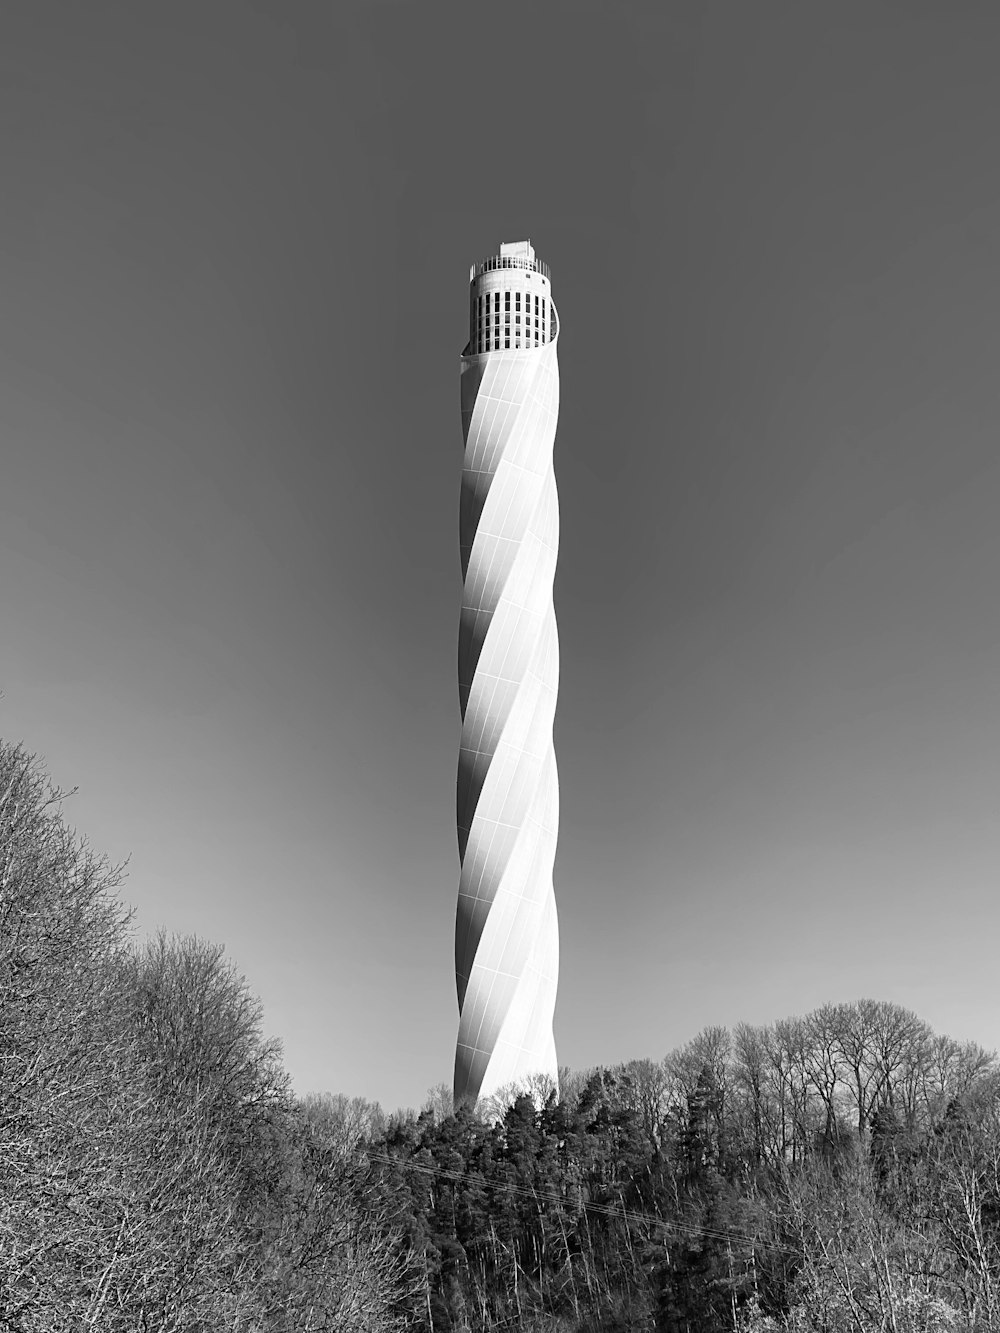 타워의 회색조 사진